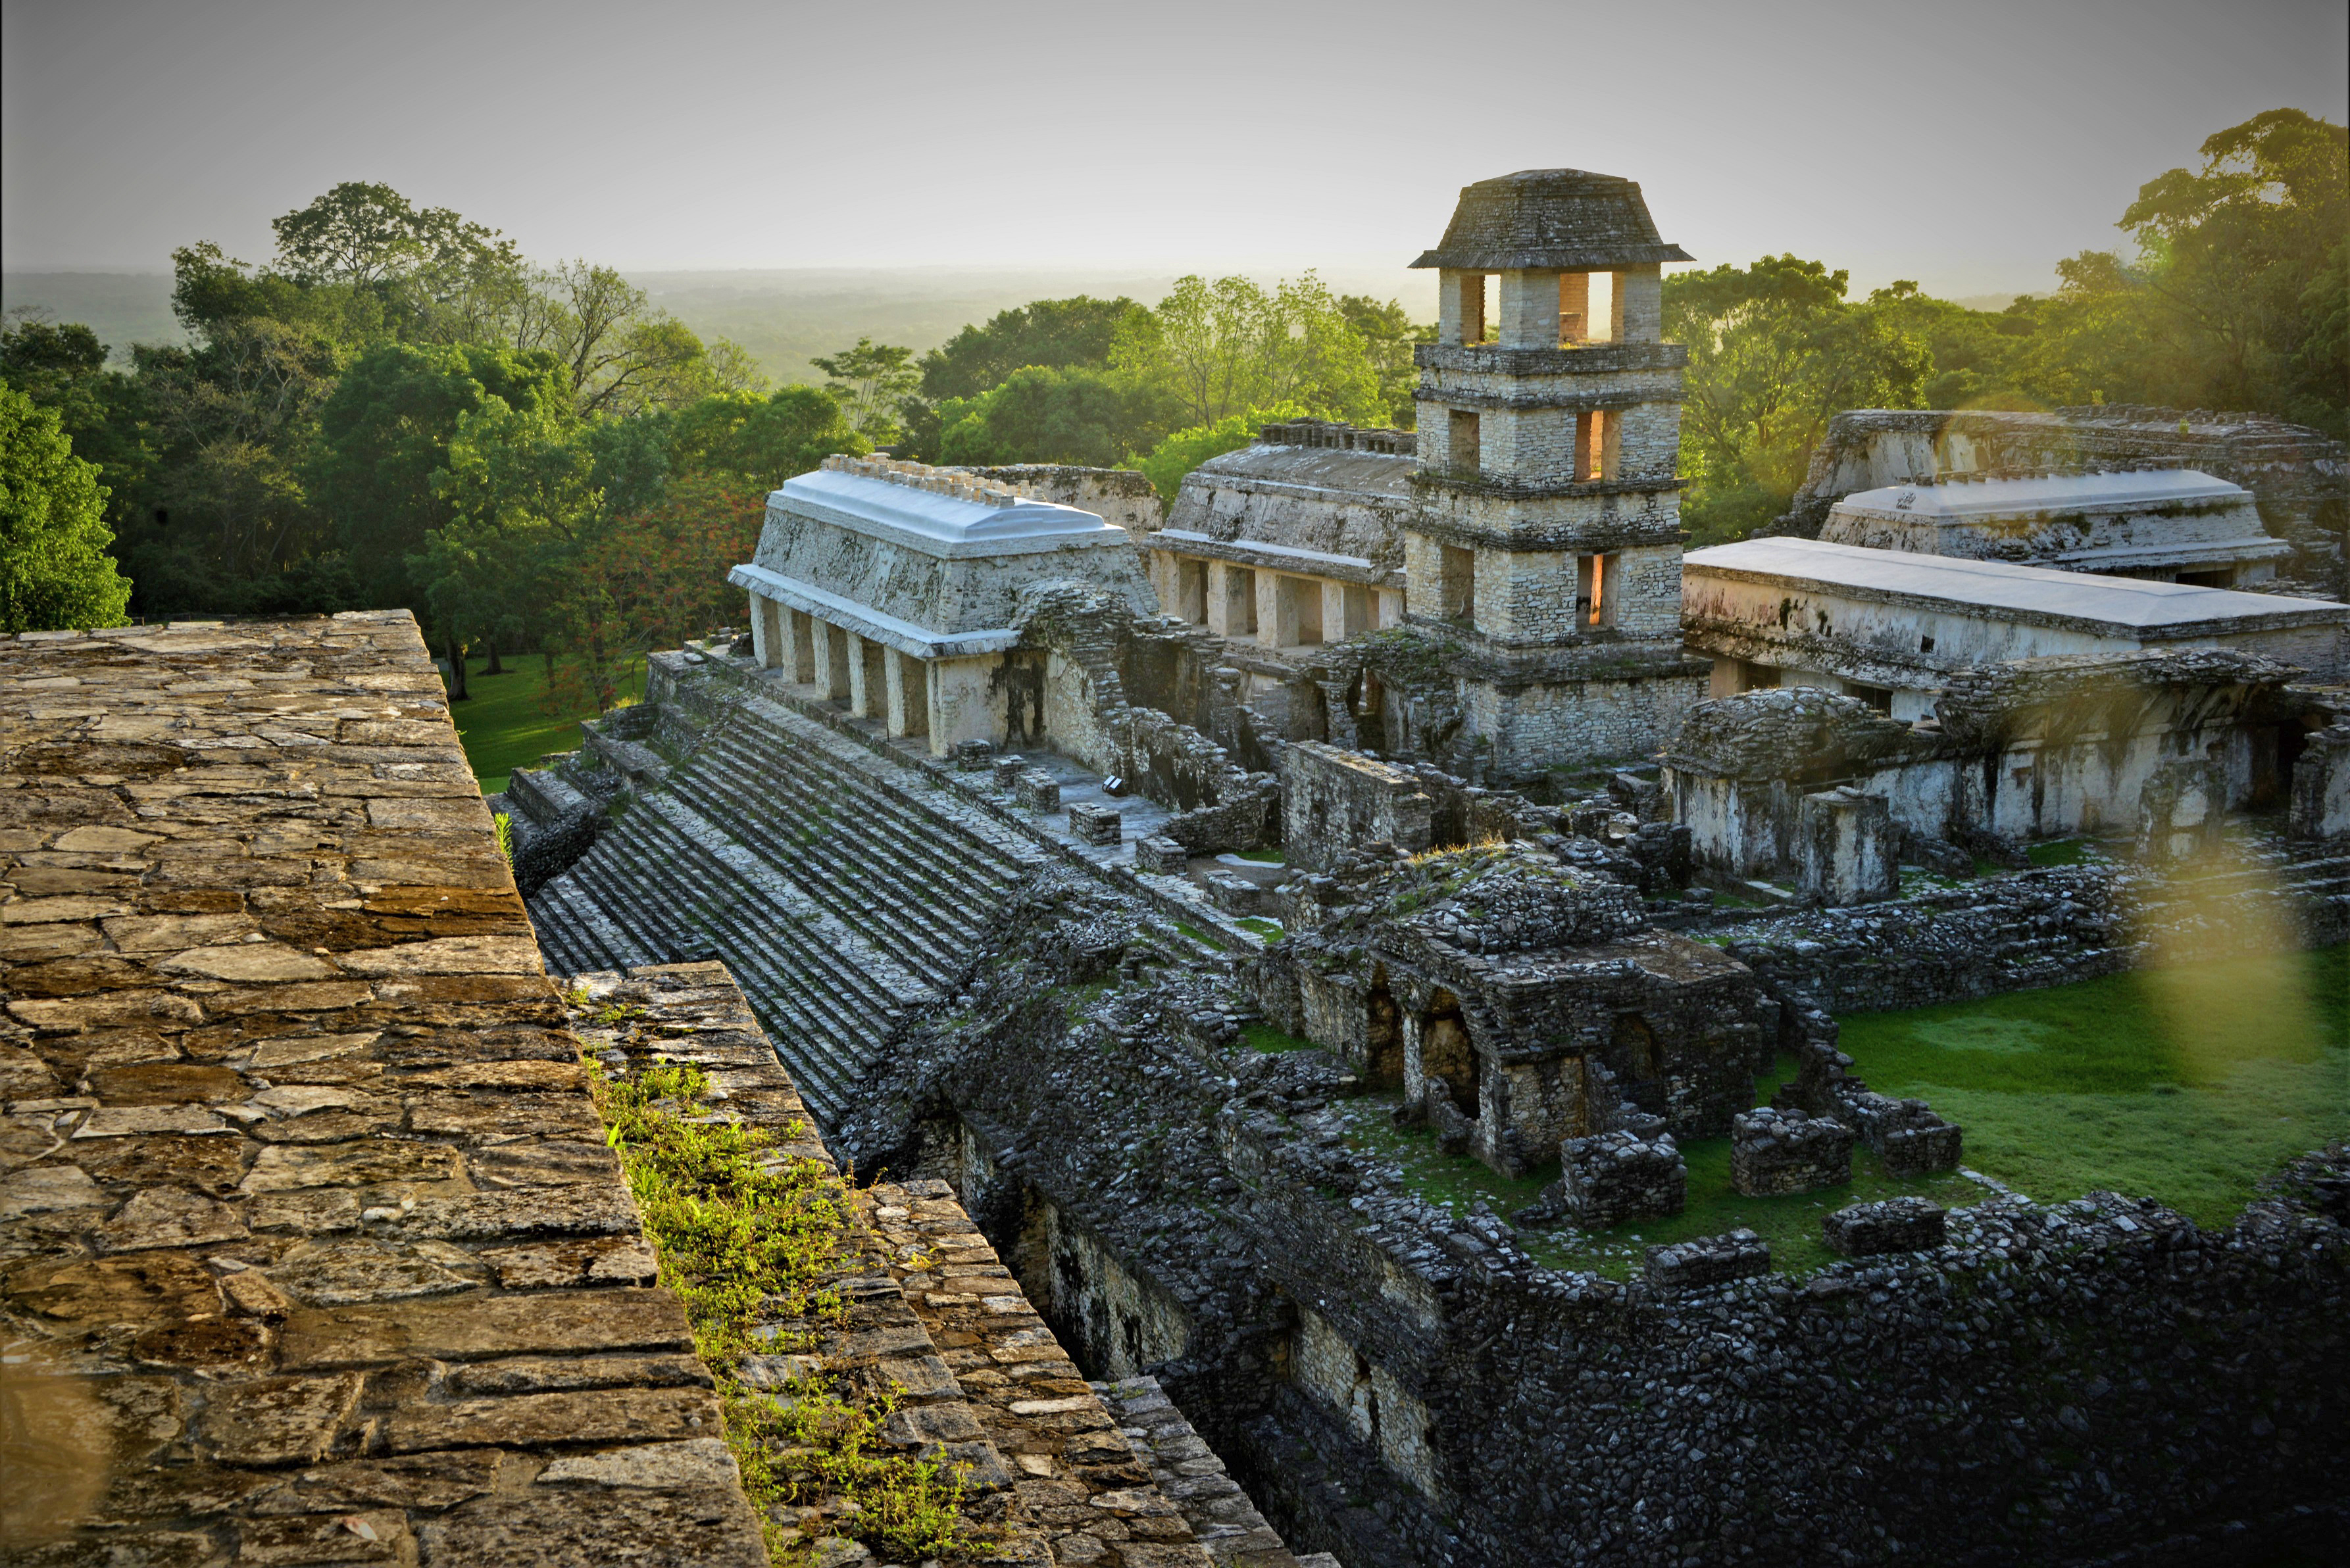 Hallazgos arqueológicos en Palenque Chiapas, vinculados con el Tren Maya (Foto: INAH)